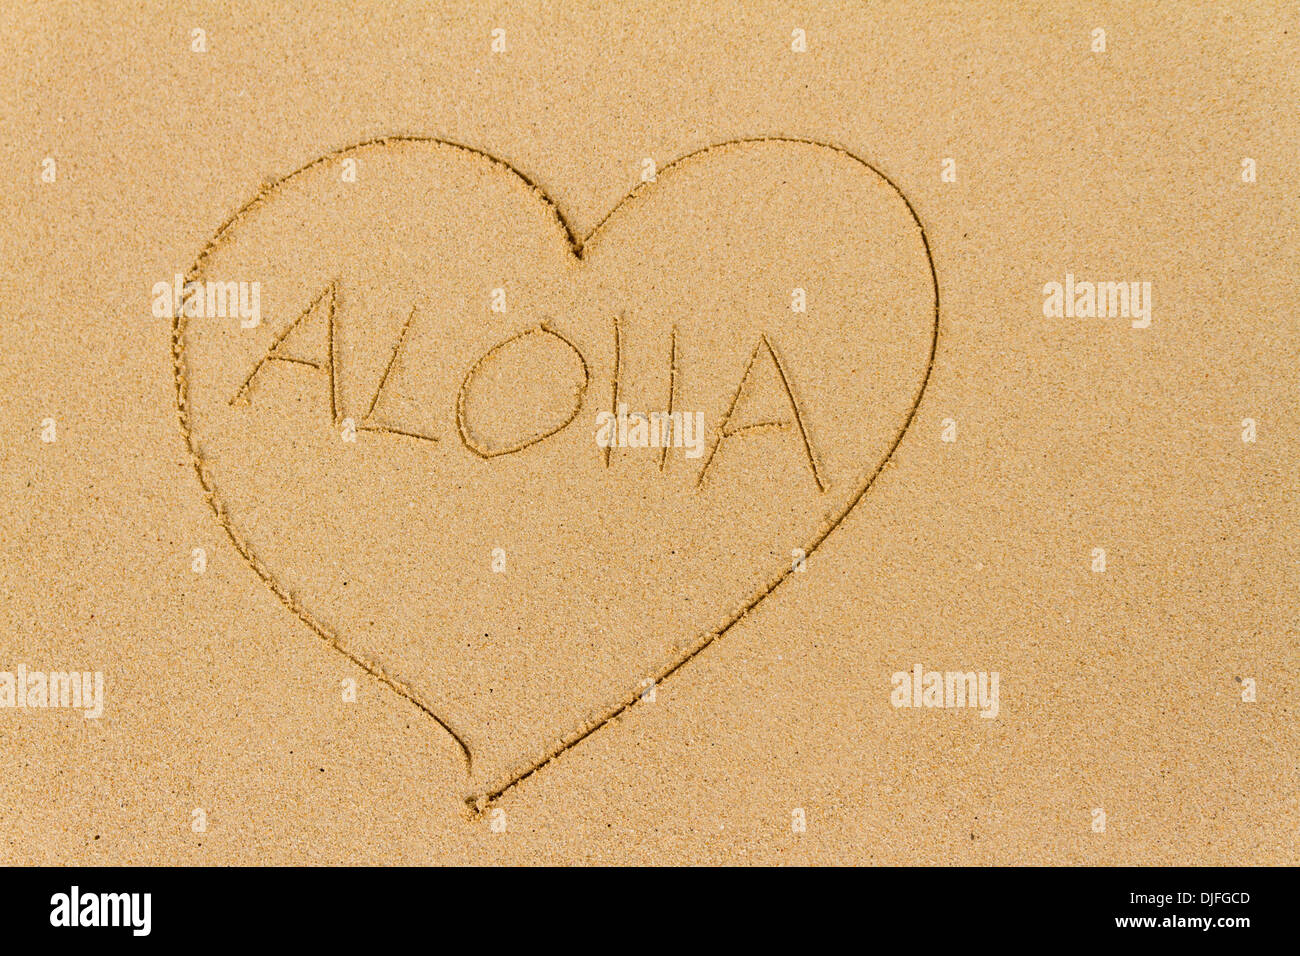 Un cuore disegnato nella sabbia con la parola Aloha; Honolulu Oahu, Hawaii, Stati Uniti d'America Foto Stock